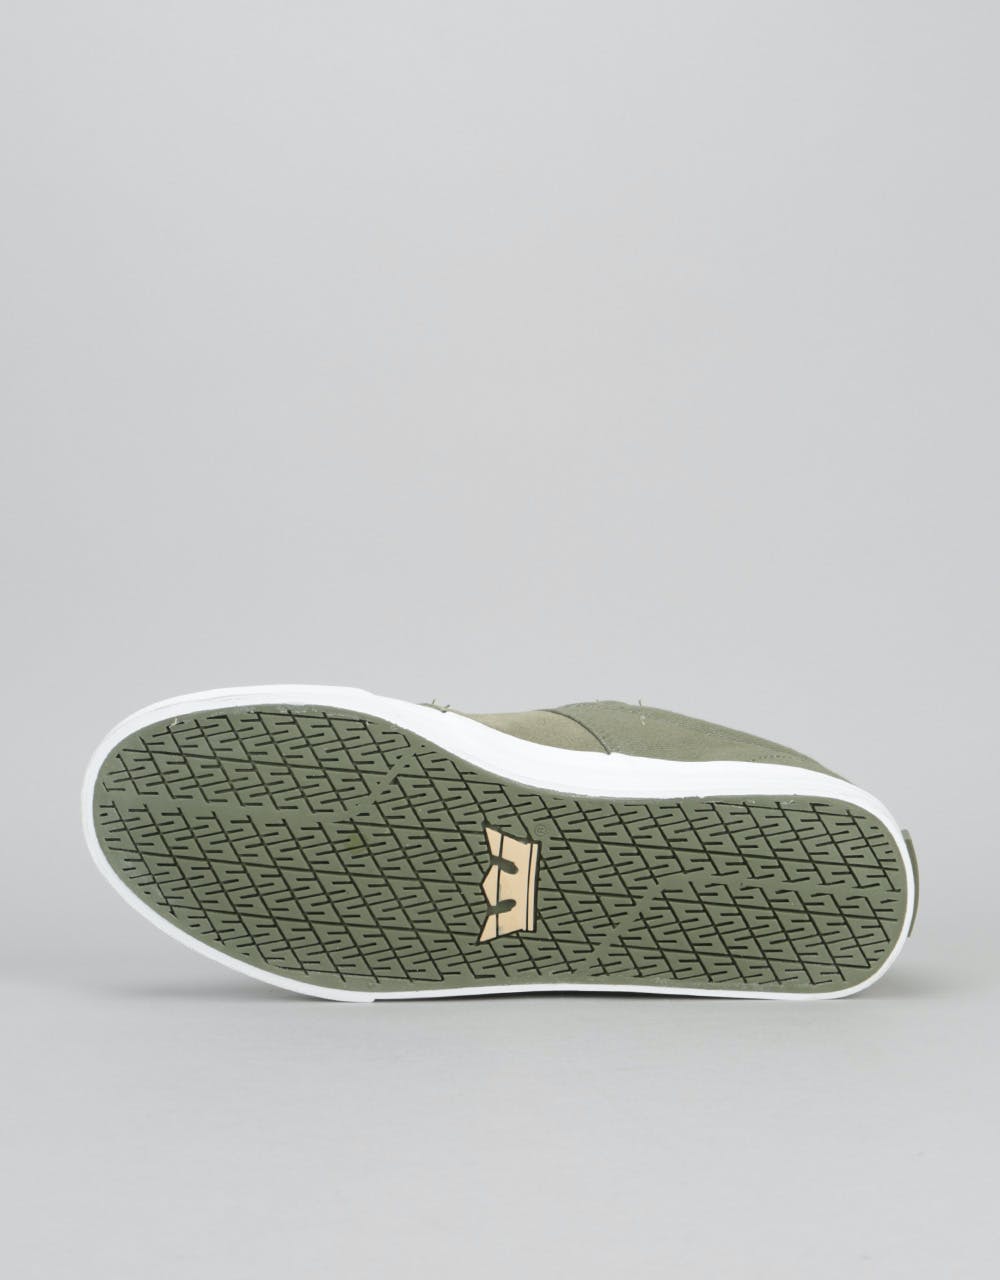 Supra Stacks Vulc II Skate Shoes - Olive/White